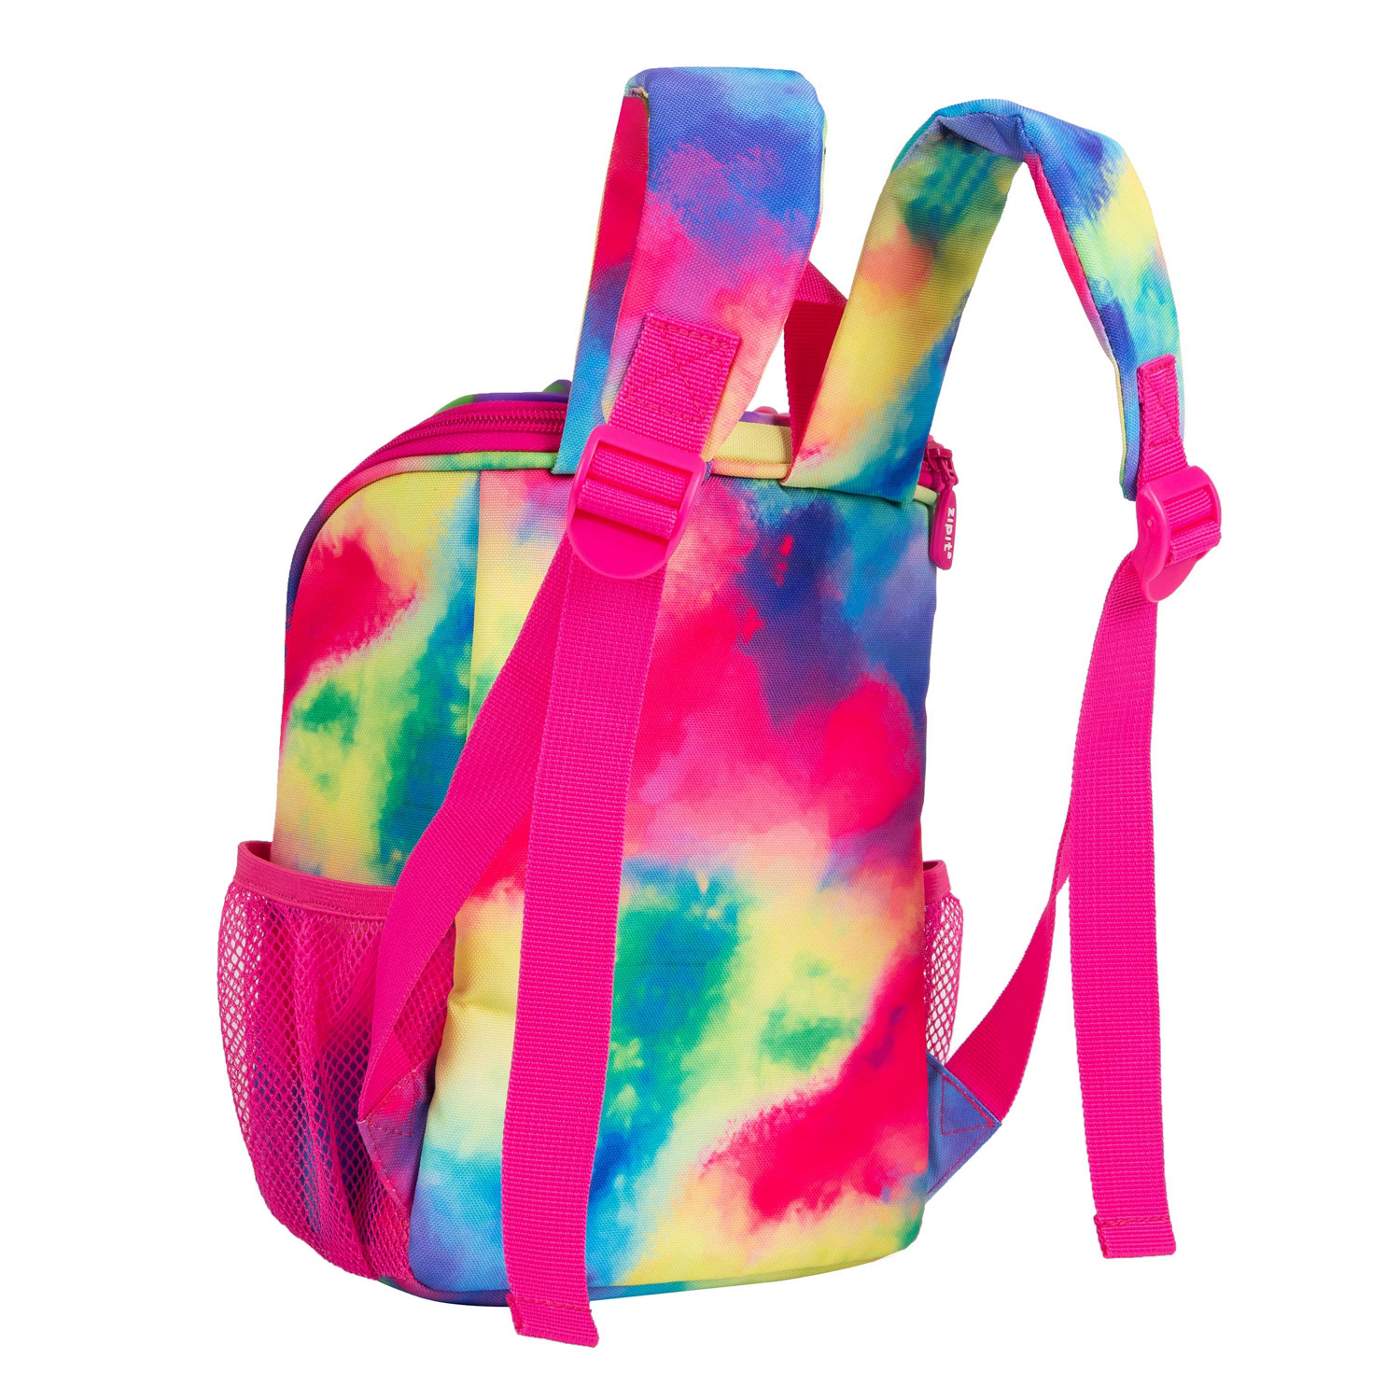 ZIPIT Zip n' Pop Mini Backpack - Tie Dye; image 5 of 5